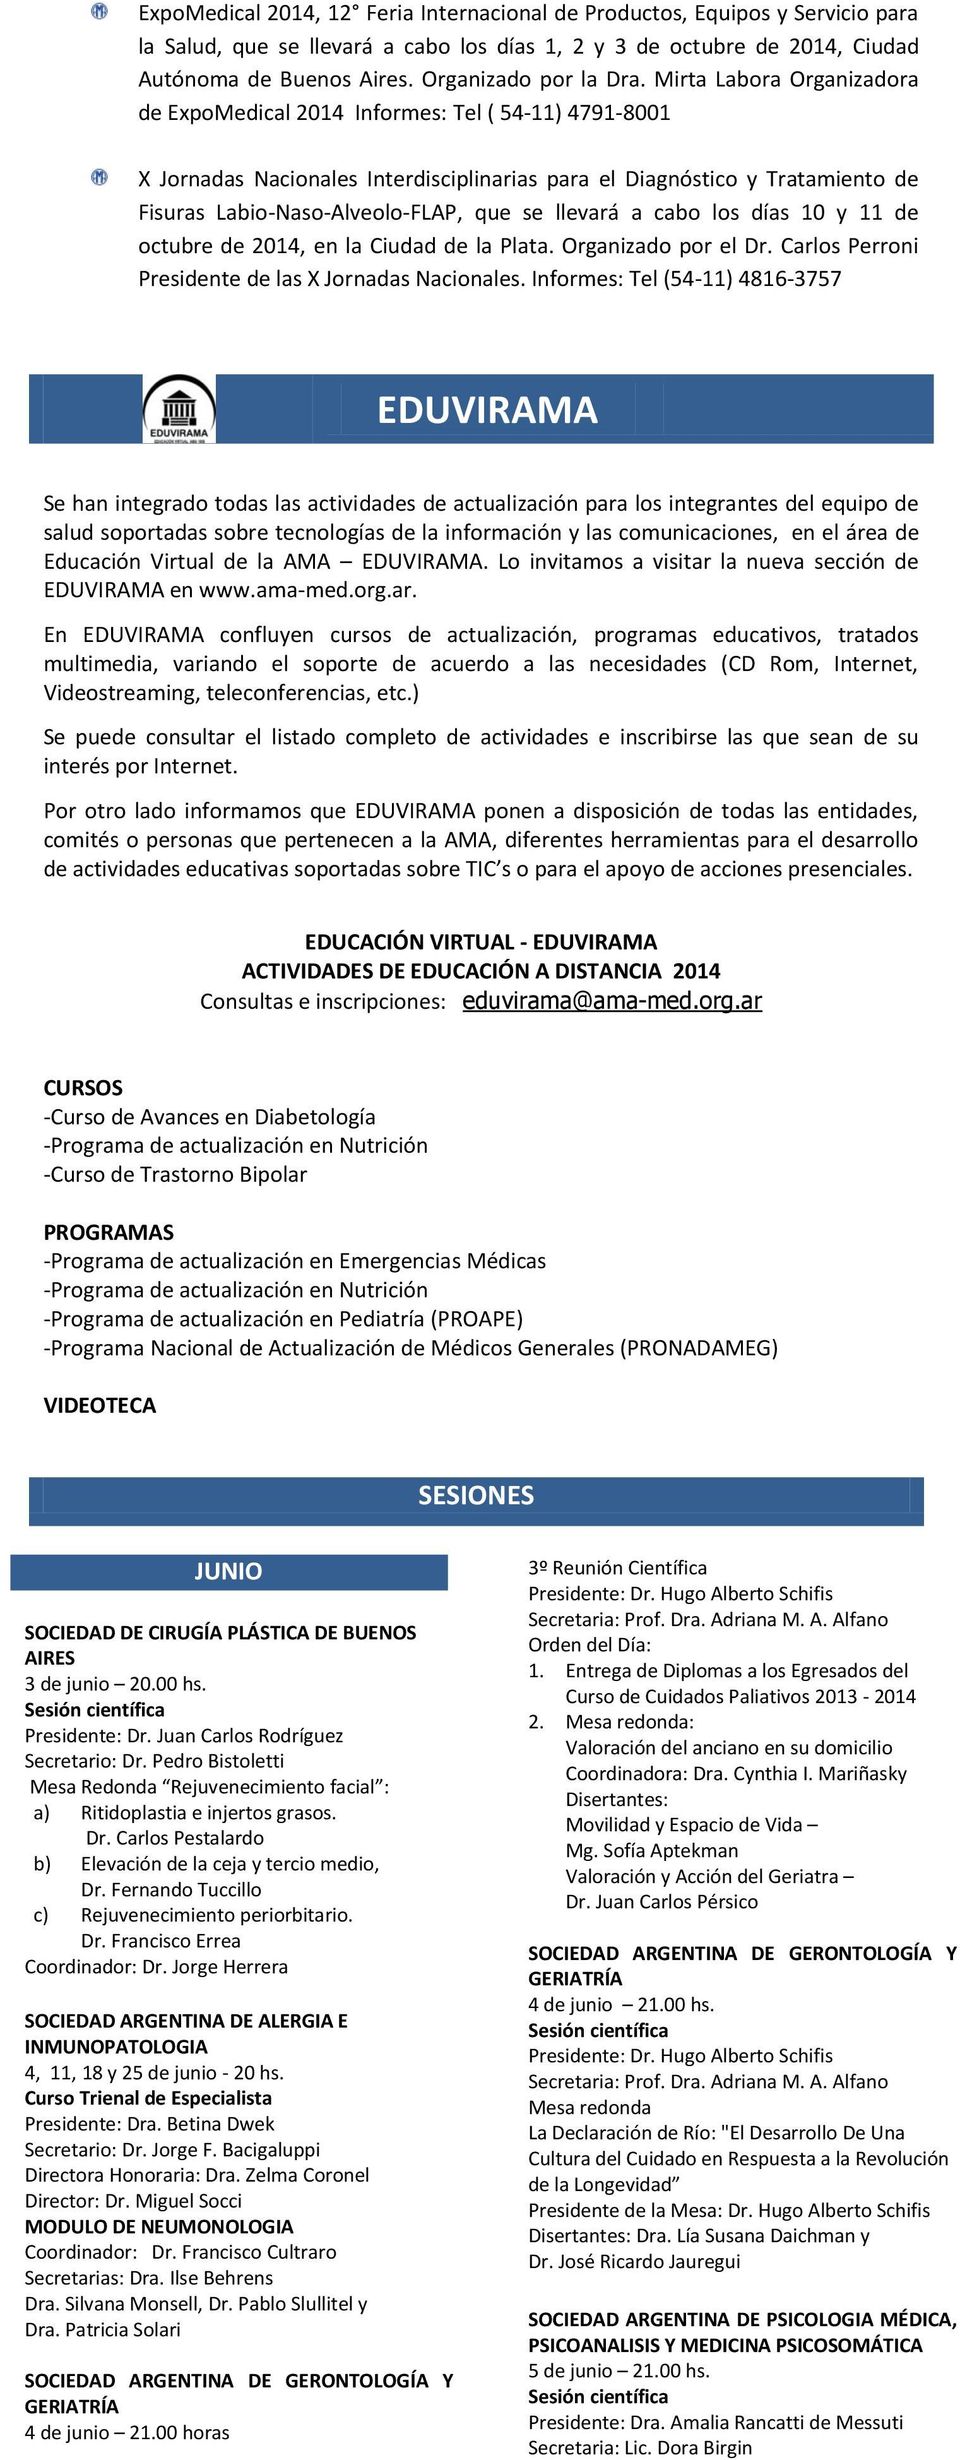 Mirta Labora Organizadora de ExpoMedical 2014 Informes: Tel ( 54-11) 4791-8001 X Jornadas Nacionales Interdisciplinarias para el Diagnóstico y Tratamiento de Fisuras Labio-Naso-Alveolo-FLAP, que se